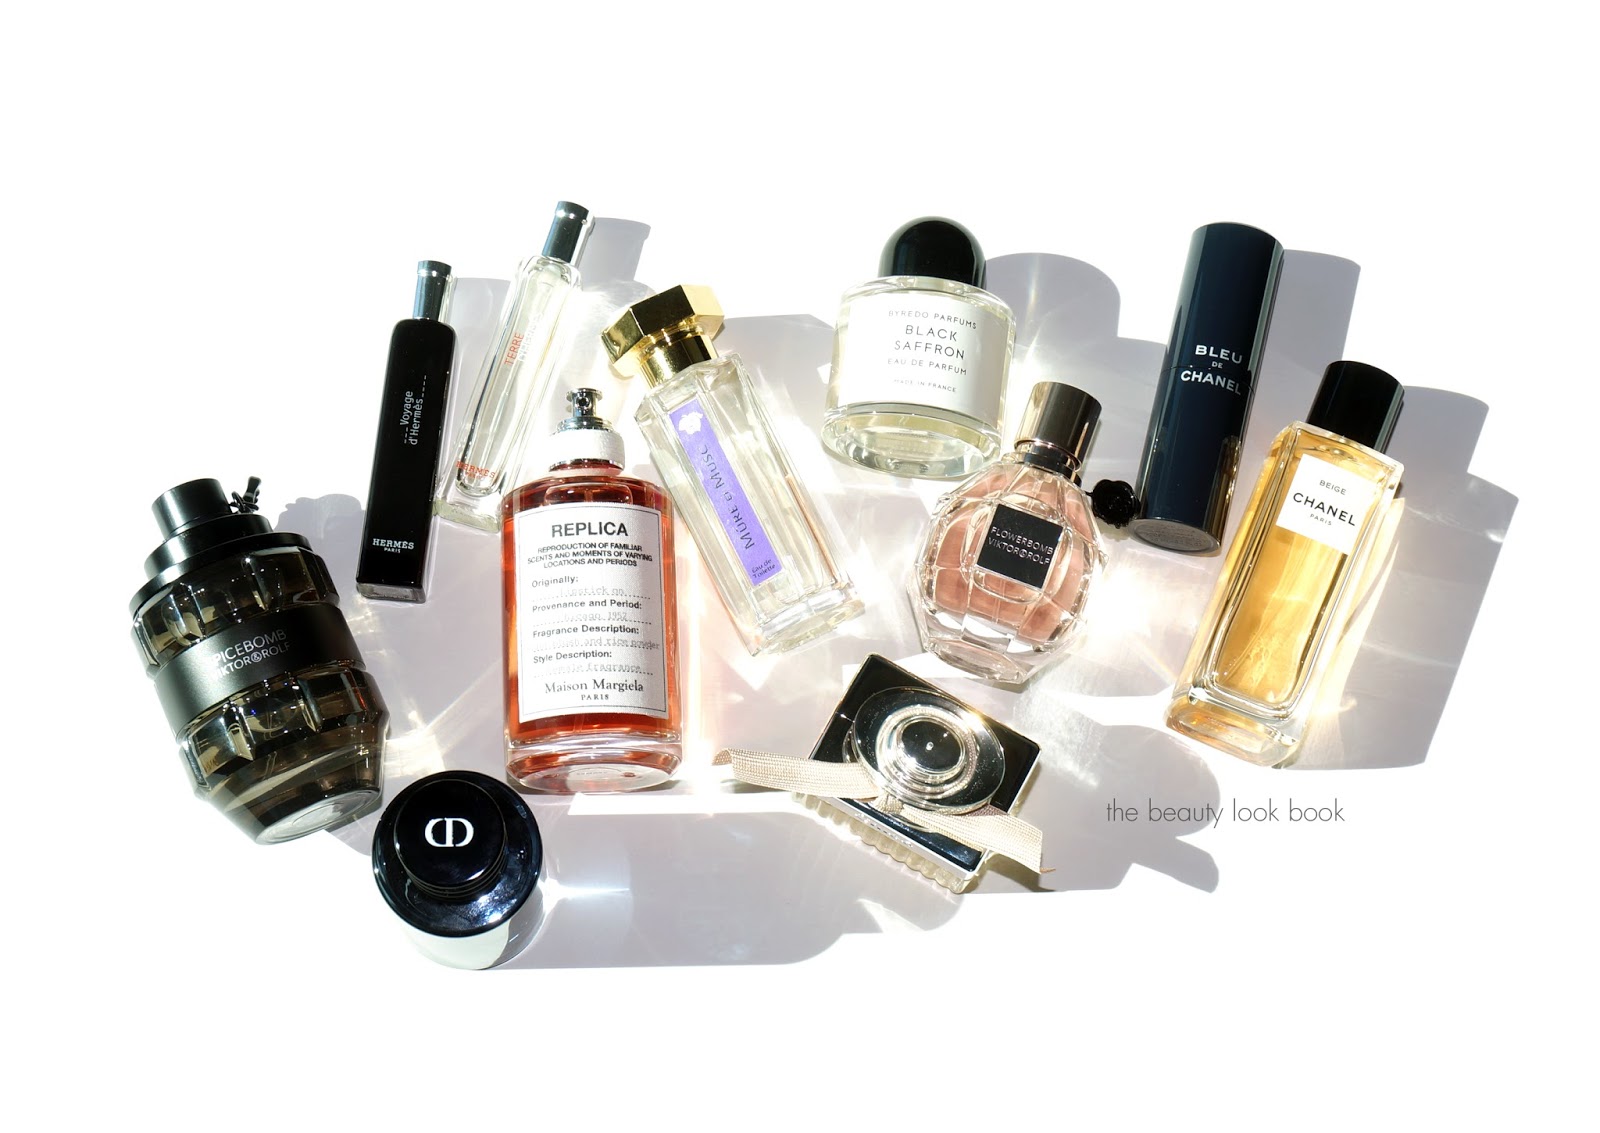 Louis Vuitton Unisex Perfume (Select Fragrance) 2 ml/0.06 oz Eau de Parfum  Sampl